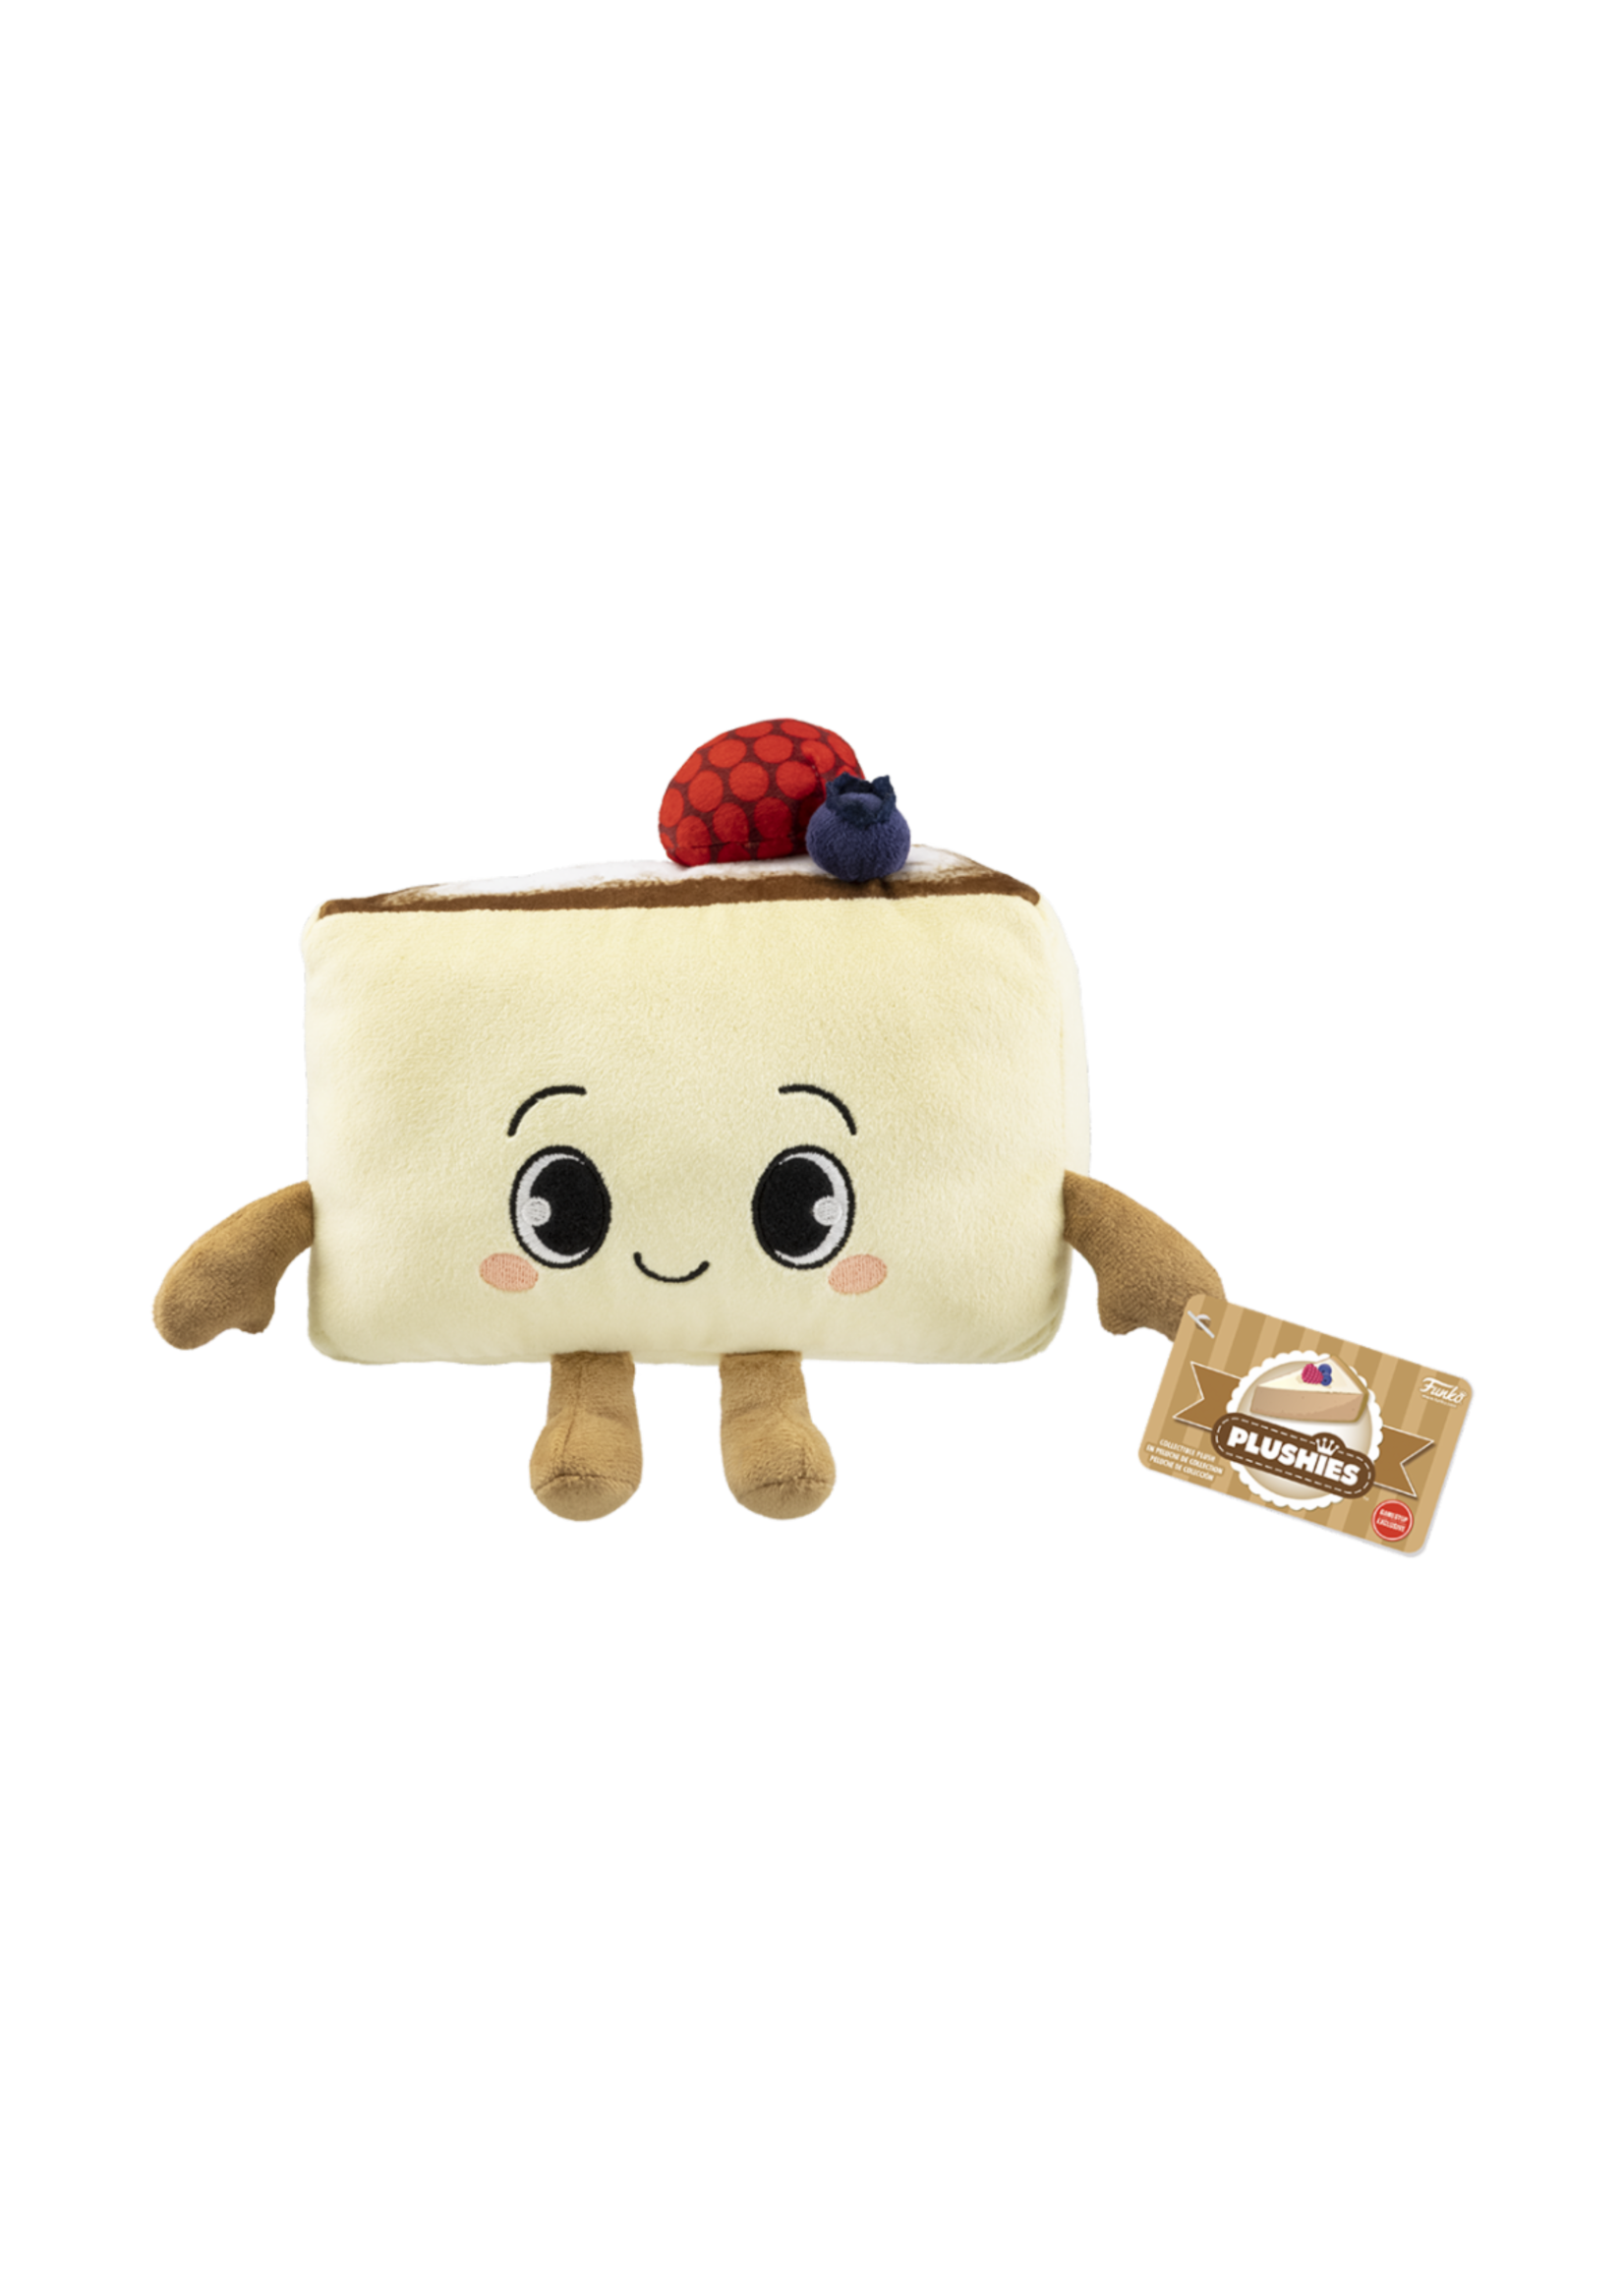 Funko Plush Gamer Desserts Jiggly Cheesecake